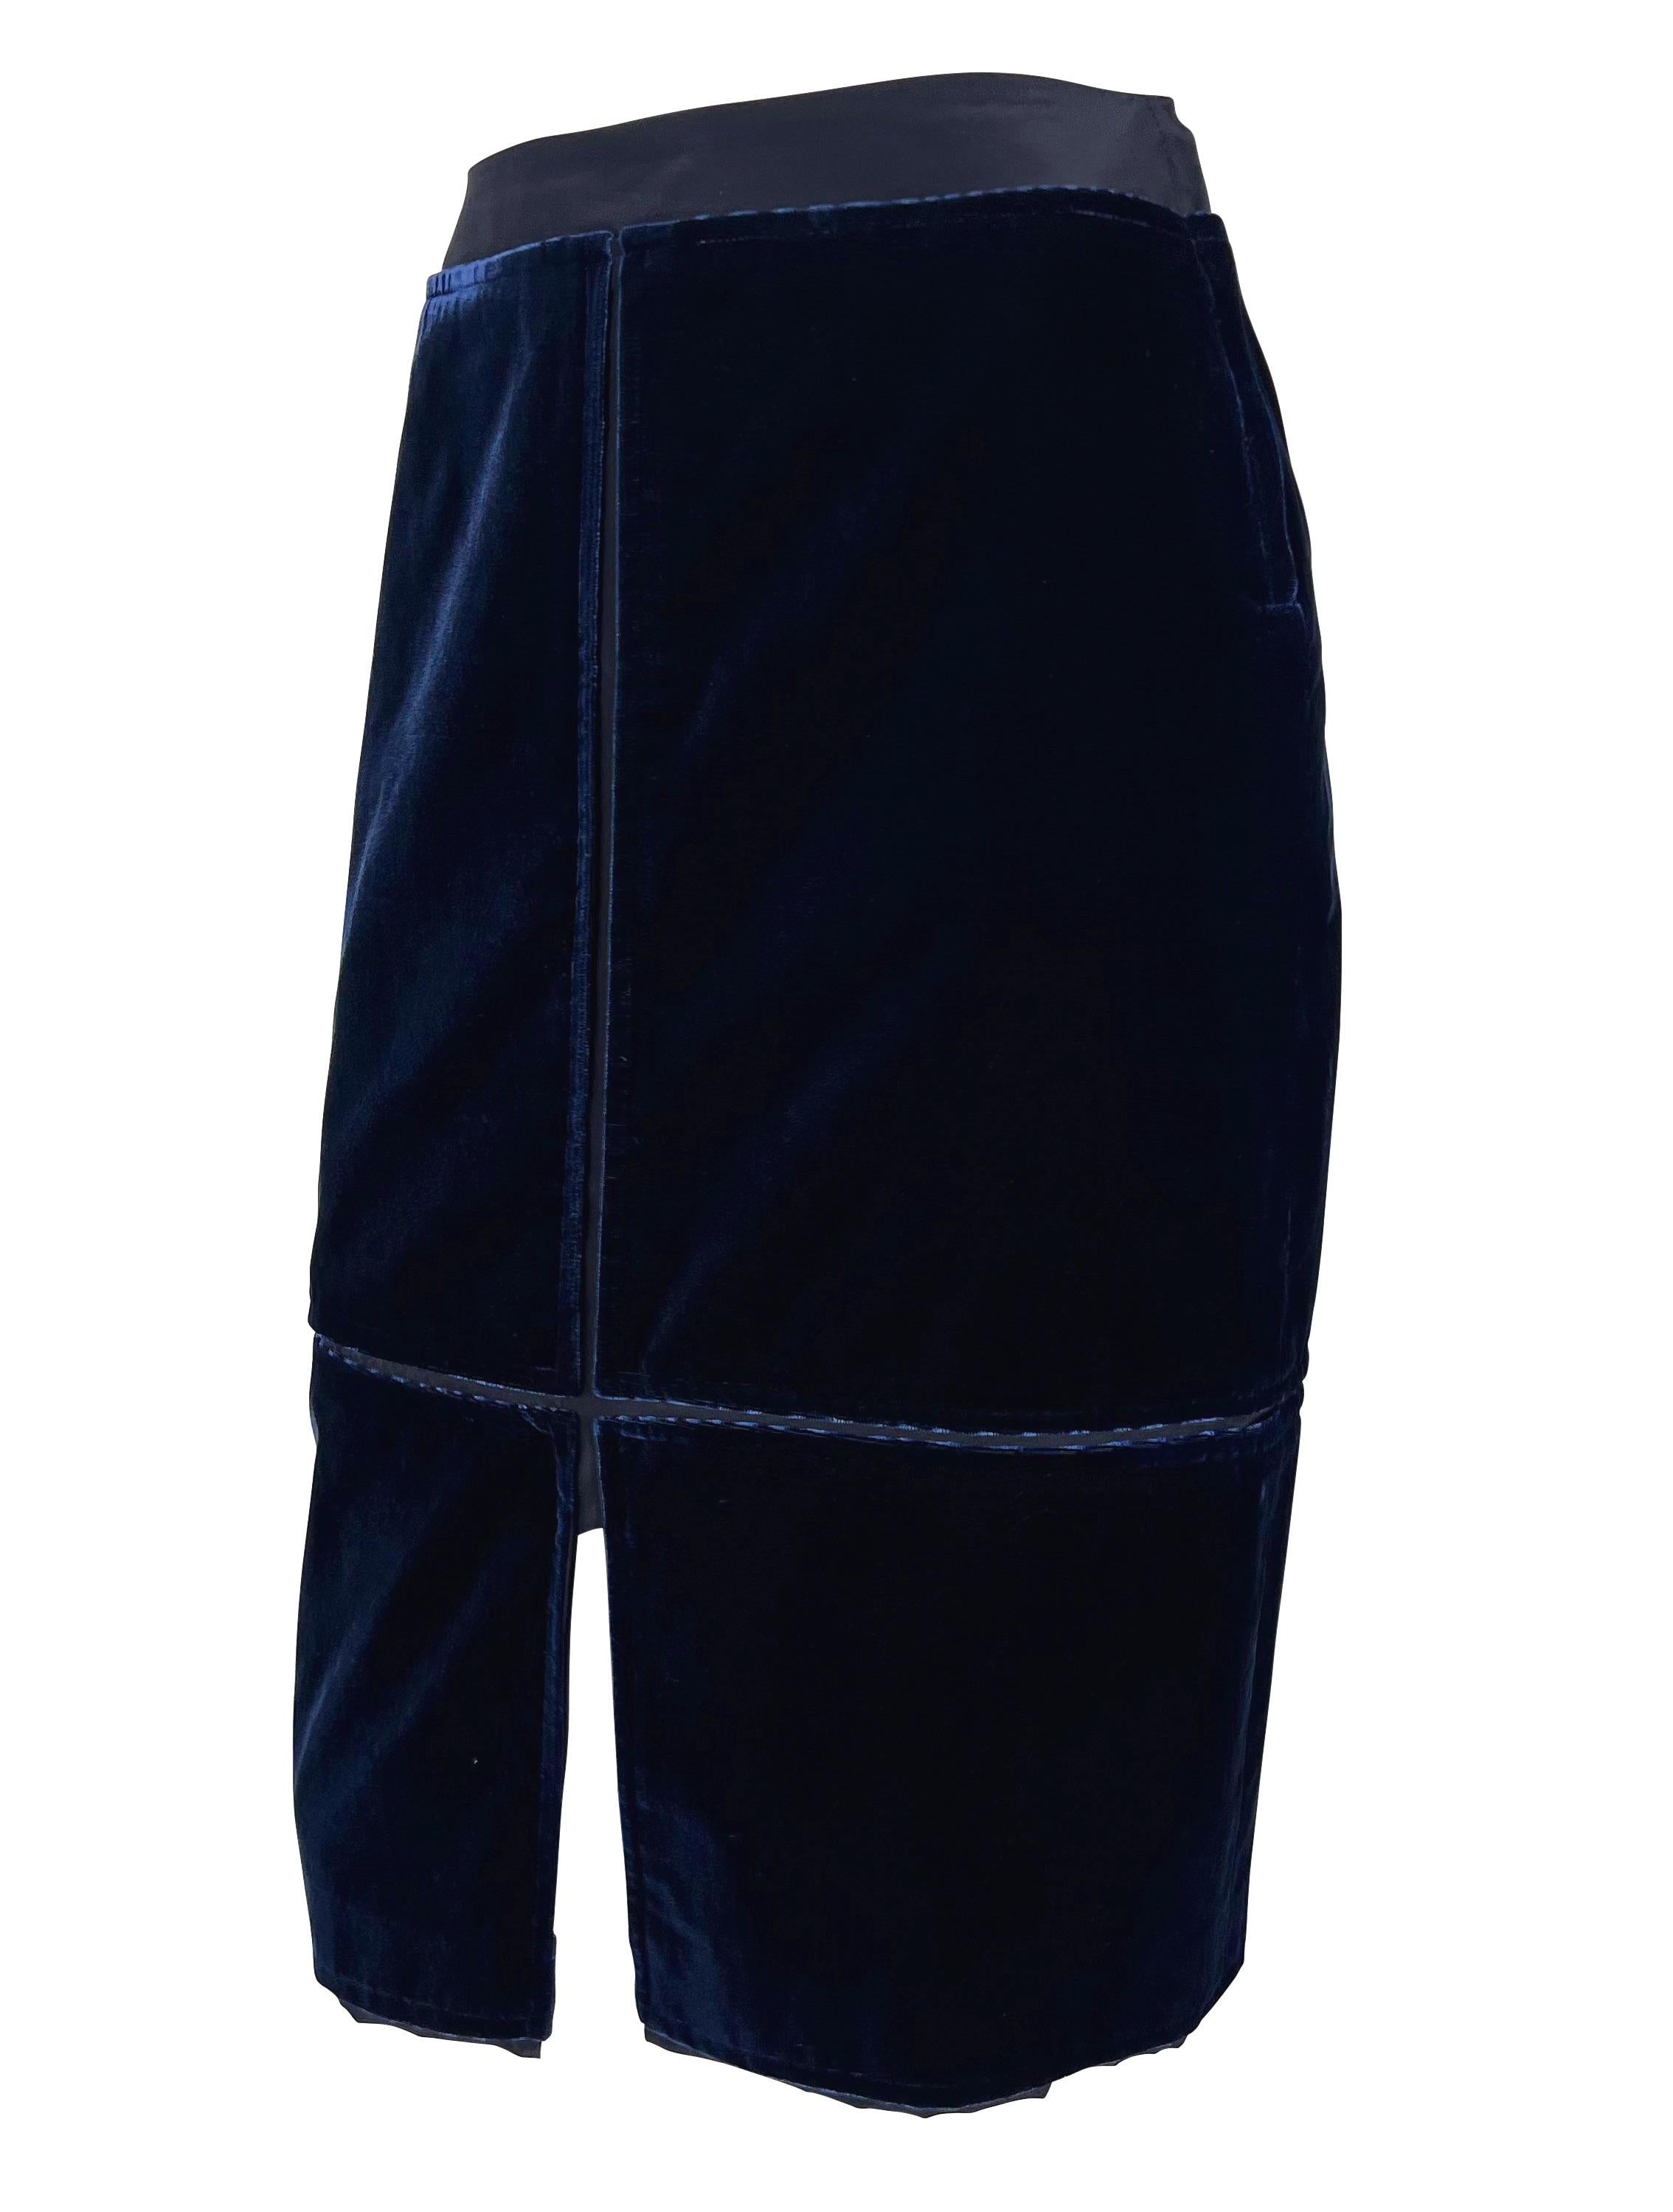 Black F/W 2002 Yves Saint Laurent by Tom Ford Blue Velvet Panel Pencil Skirt For Sale